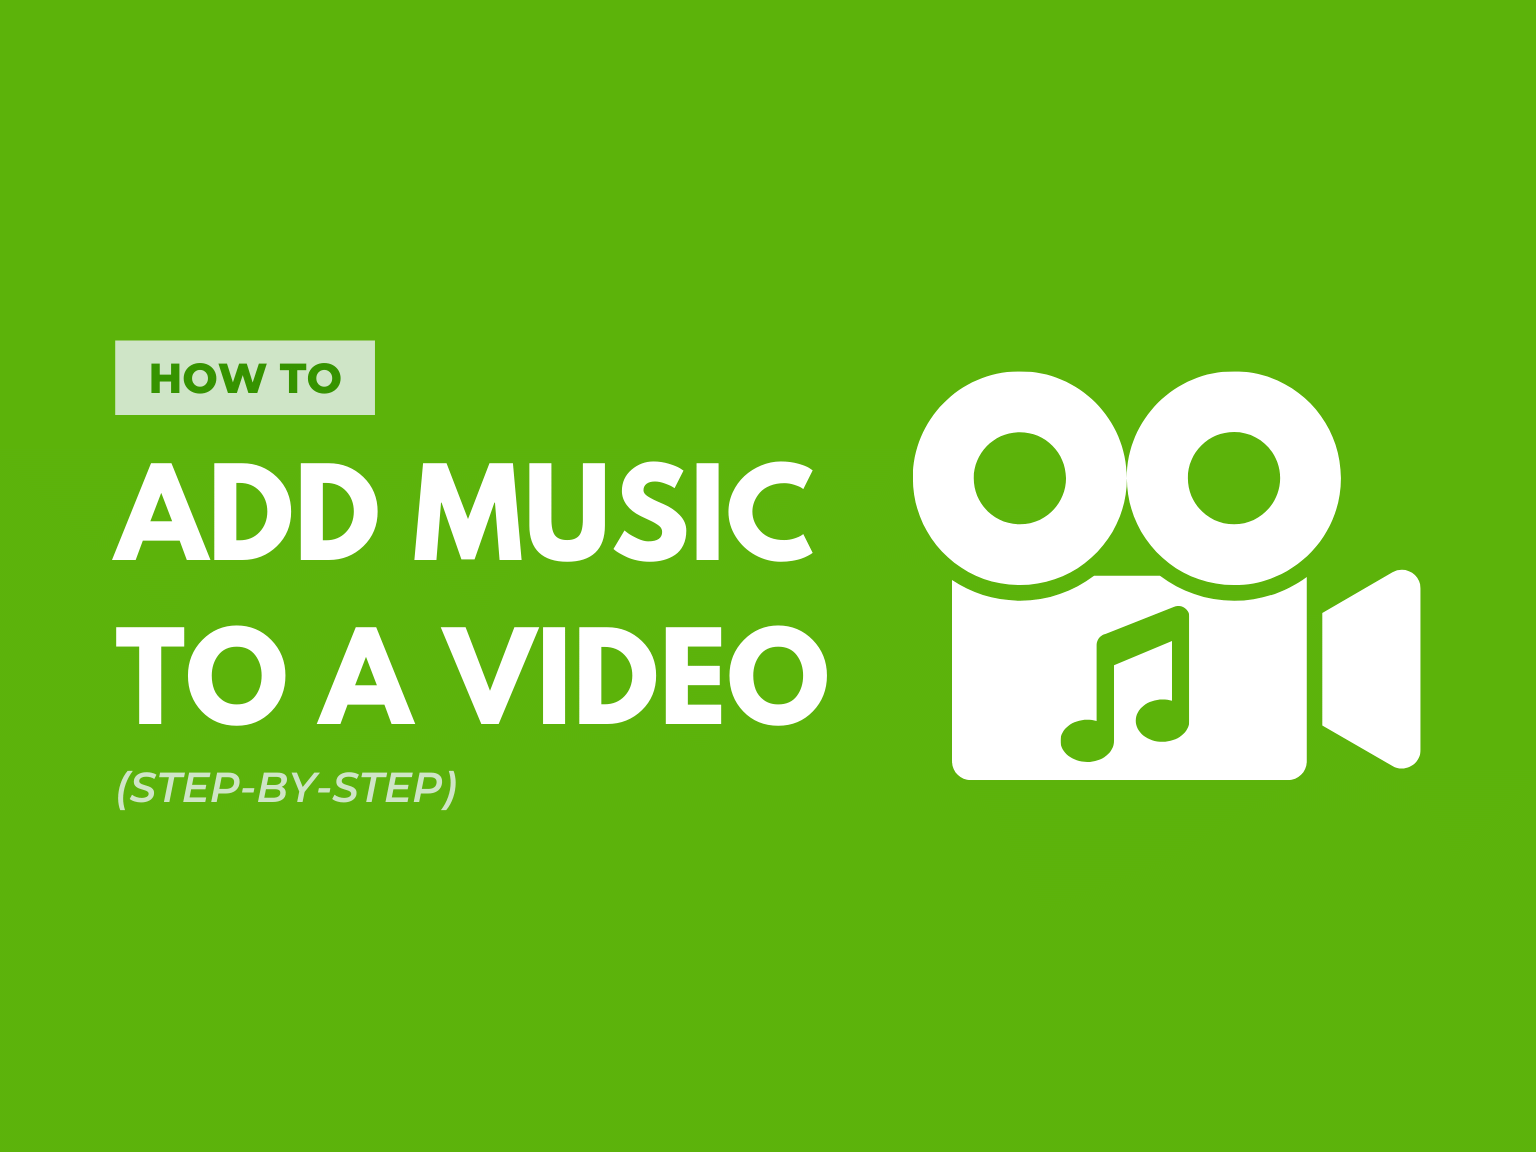 Cách thêm nhạc vào video không phải là điều khó khăn khi bạn sử dụng các phần mềm chỉnh sửa video hiện nay. Hãy cùng khám phá những hướng dẫn từng bước chi tiết và dễ hiểu để tùy chỉnh cài đặt âm thanh, điều chỉnh âm lượng và thêm nhạc vào video một cách chuyên nghiệp và dễ dàng. Trải nghiệm sáng tạo và độc đáo với video của bạn từ nay!